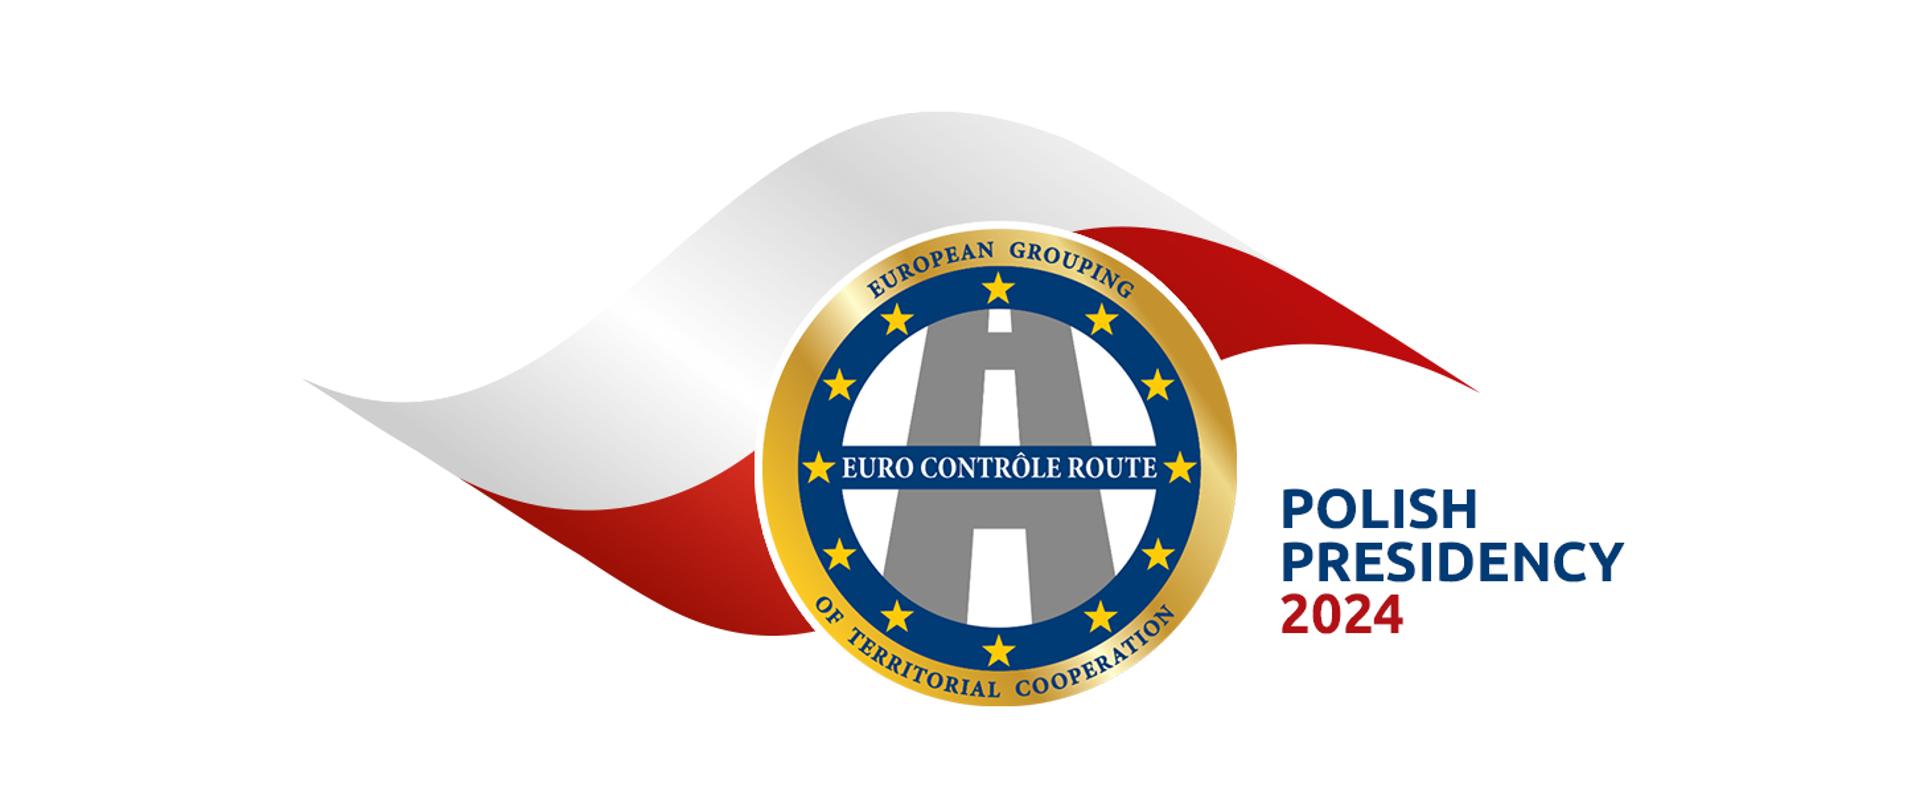 Logo Euro Contrôle Route z napisem European Grouping of territorial cooperation na tle polskiej flagi, obok podpis POLISH PRESIDENCY 2024